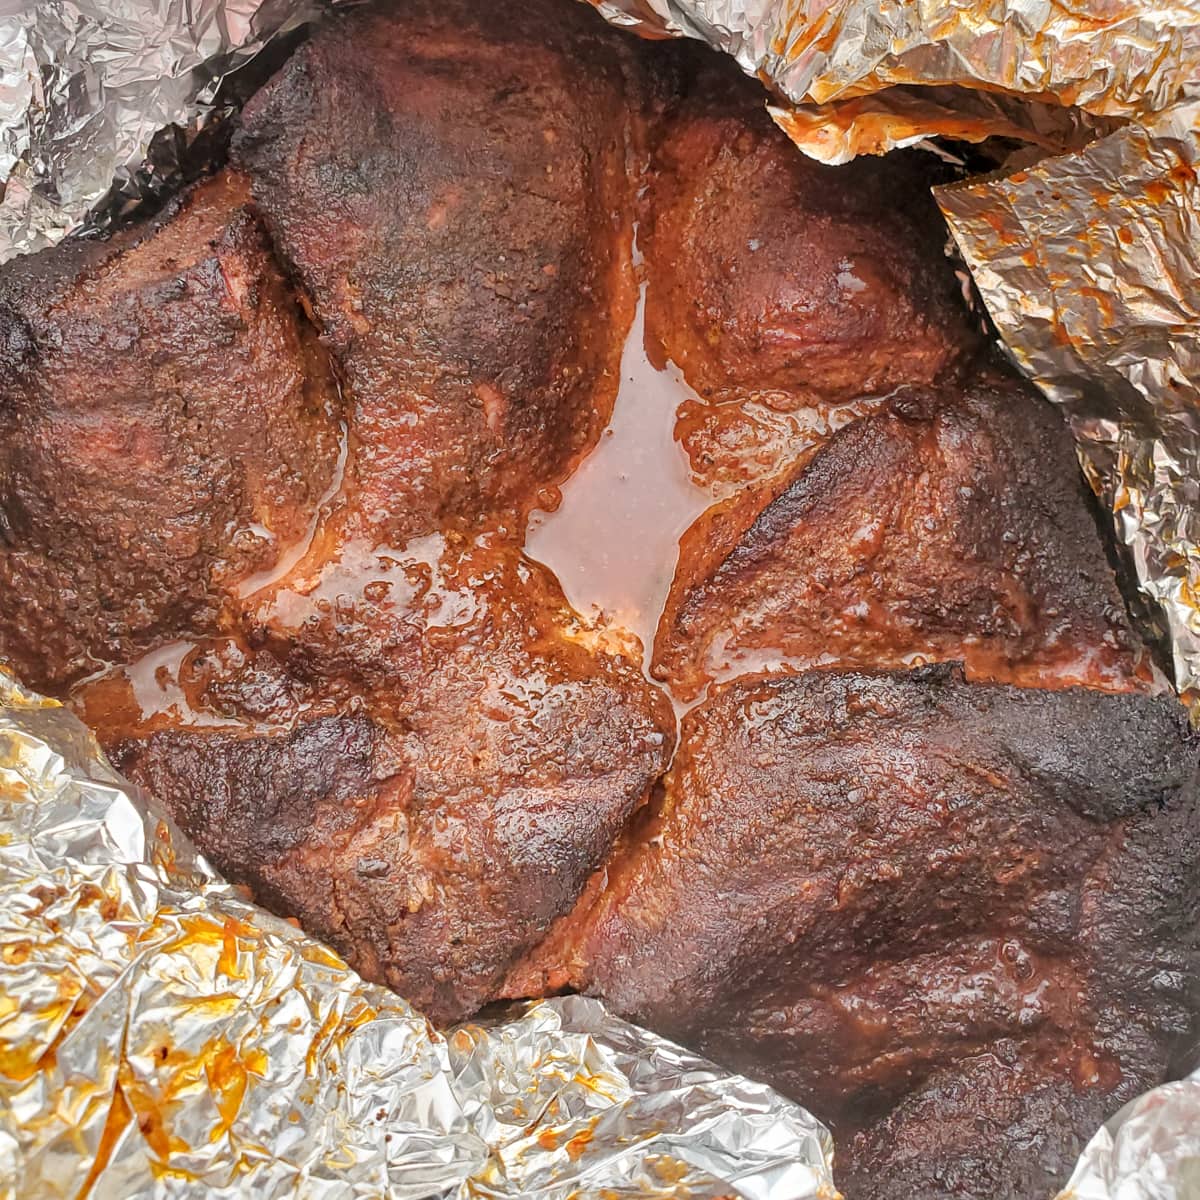 Boneless pork butt wrapped in foil.